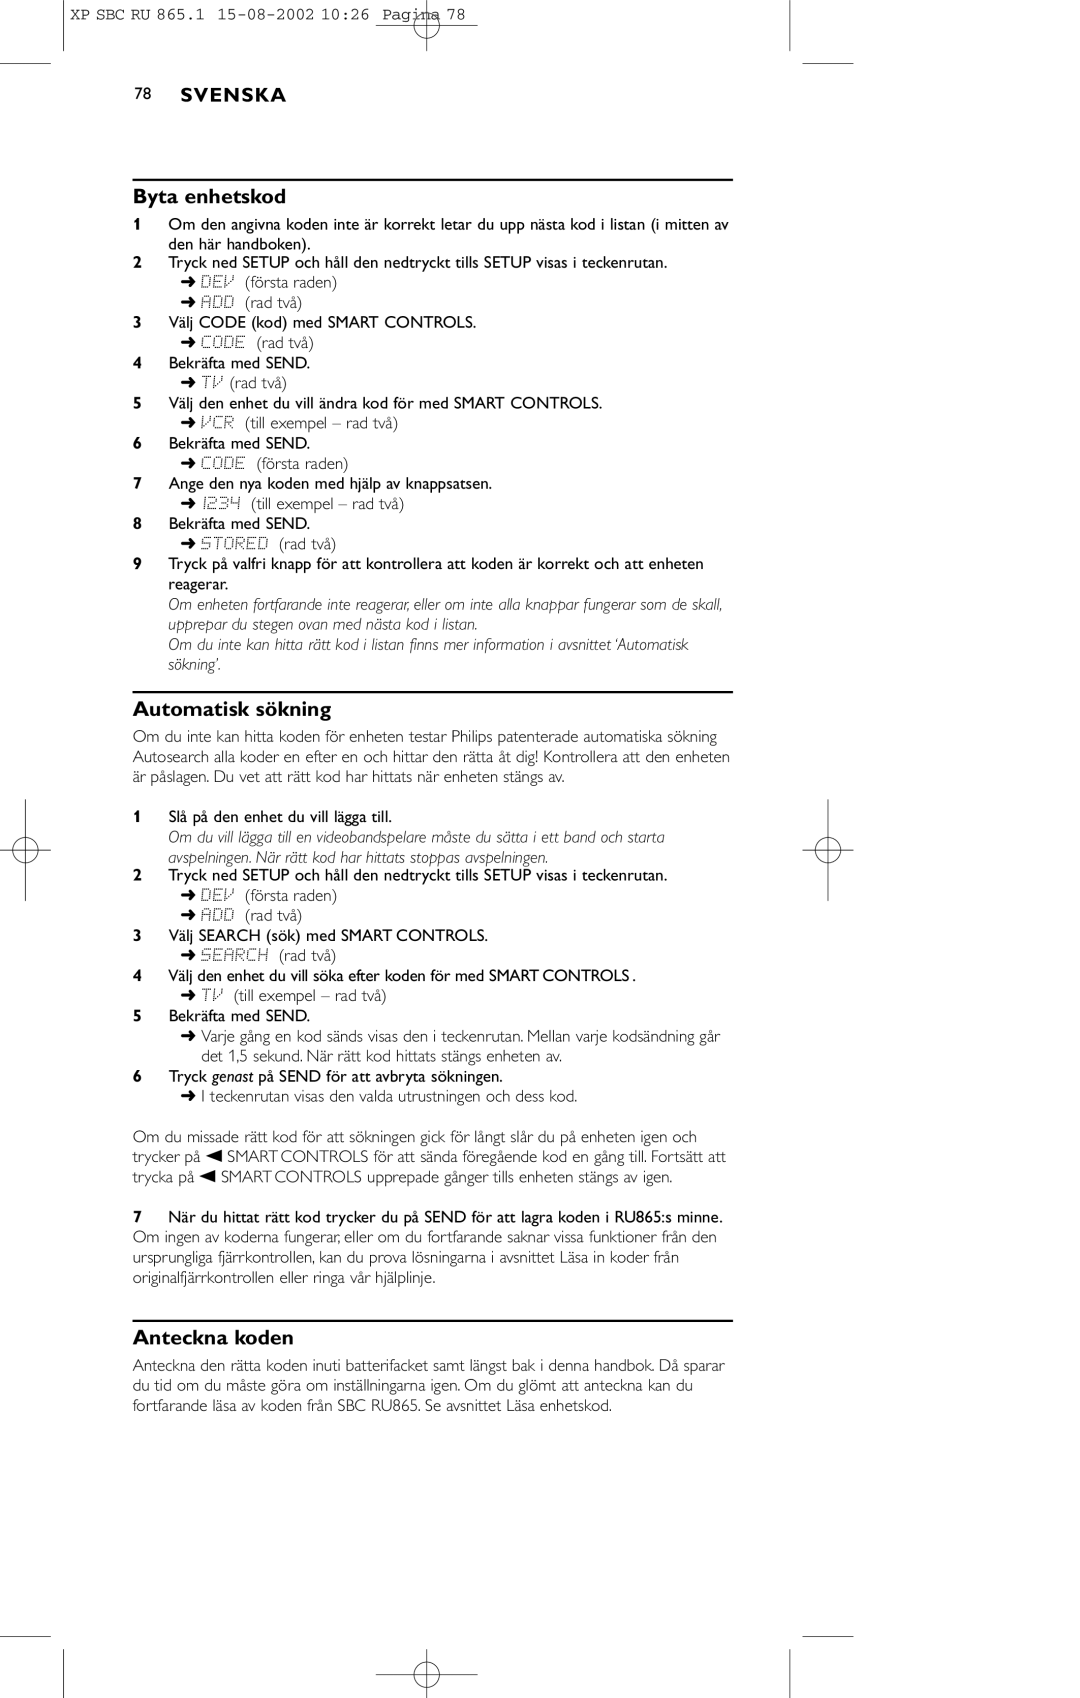 Philips SBC RU 865/00 manual Byta enhetskod, Automatisk sökning, Anteckna koden 